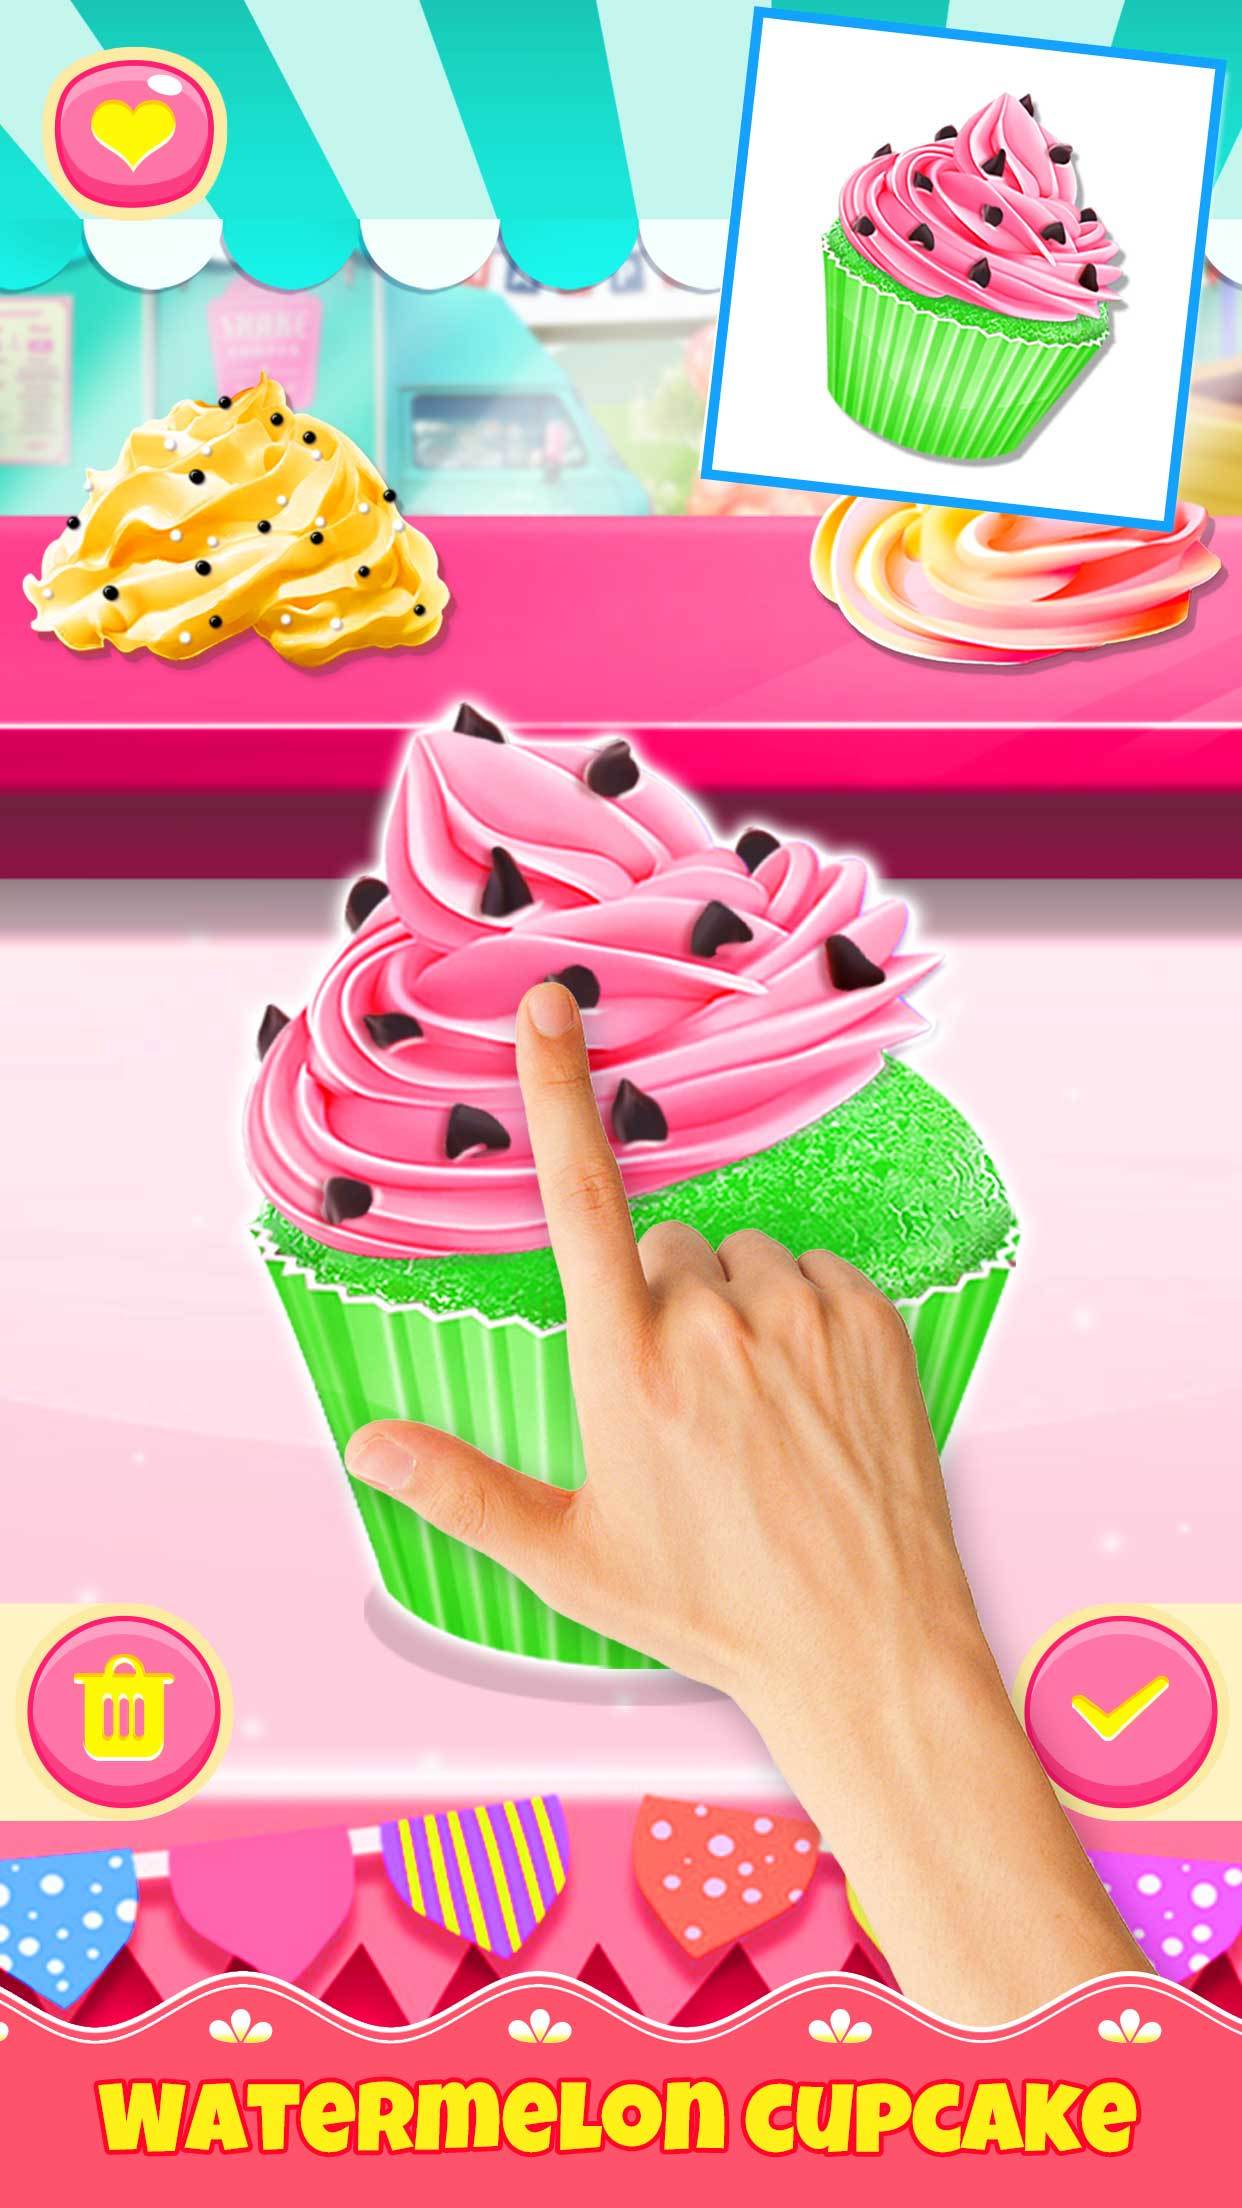 Screenshot 1 of Game Cupcake Memasak Makanan 1.3